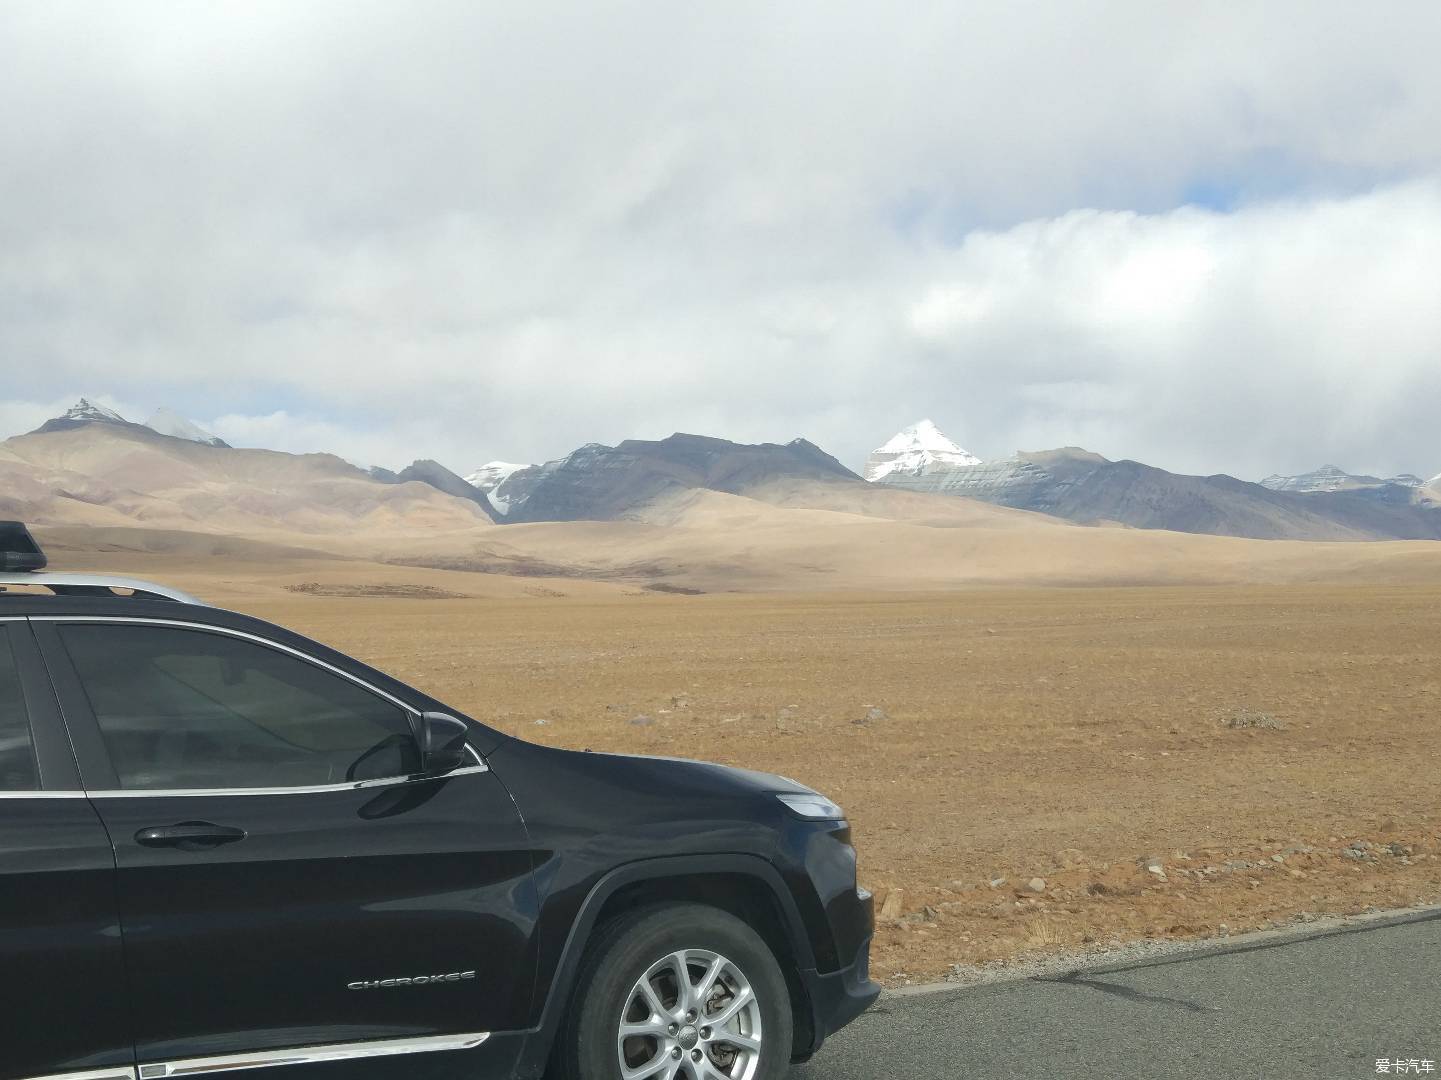 环绕新疆穿越无人区 跨过新藏